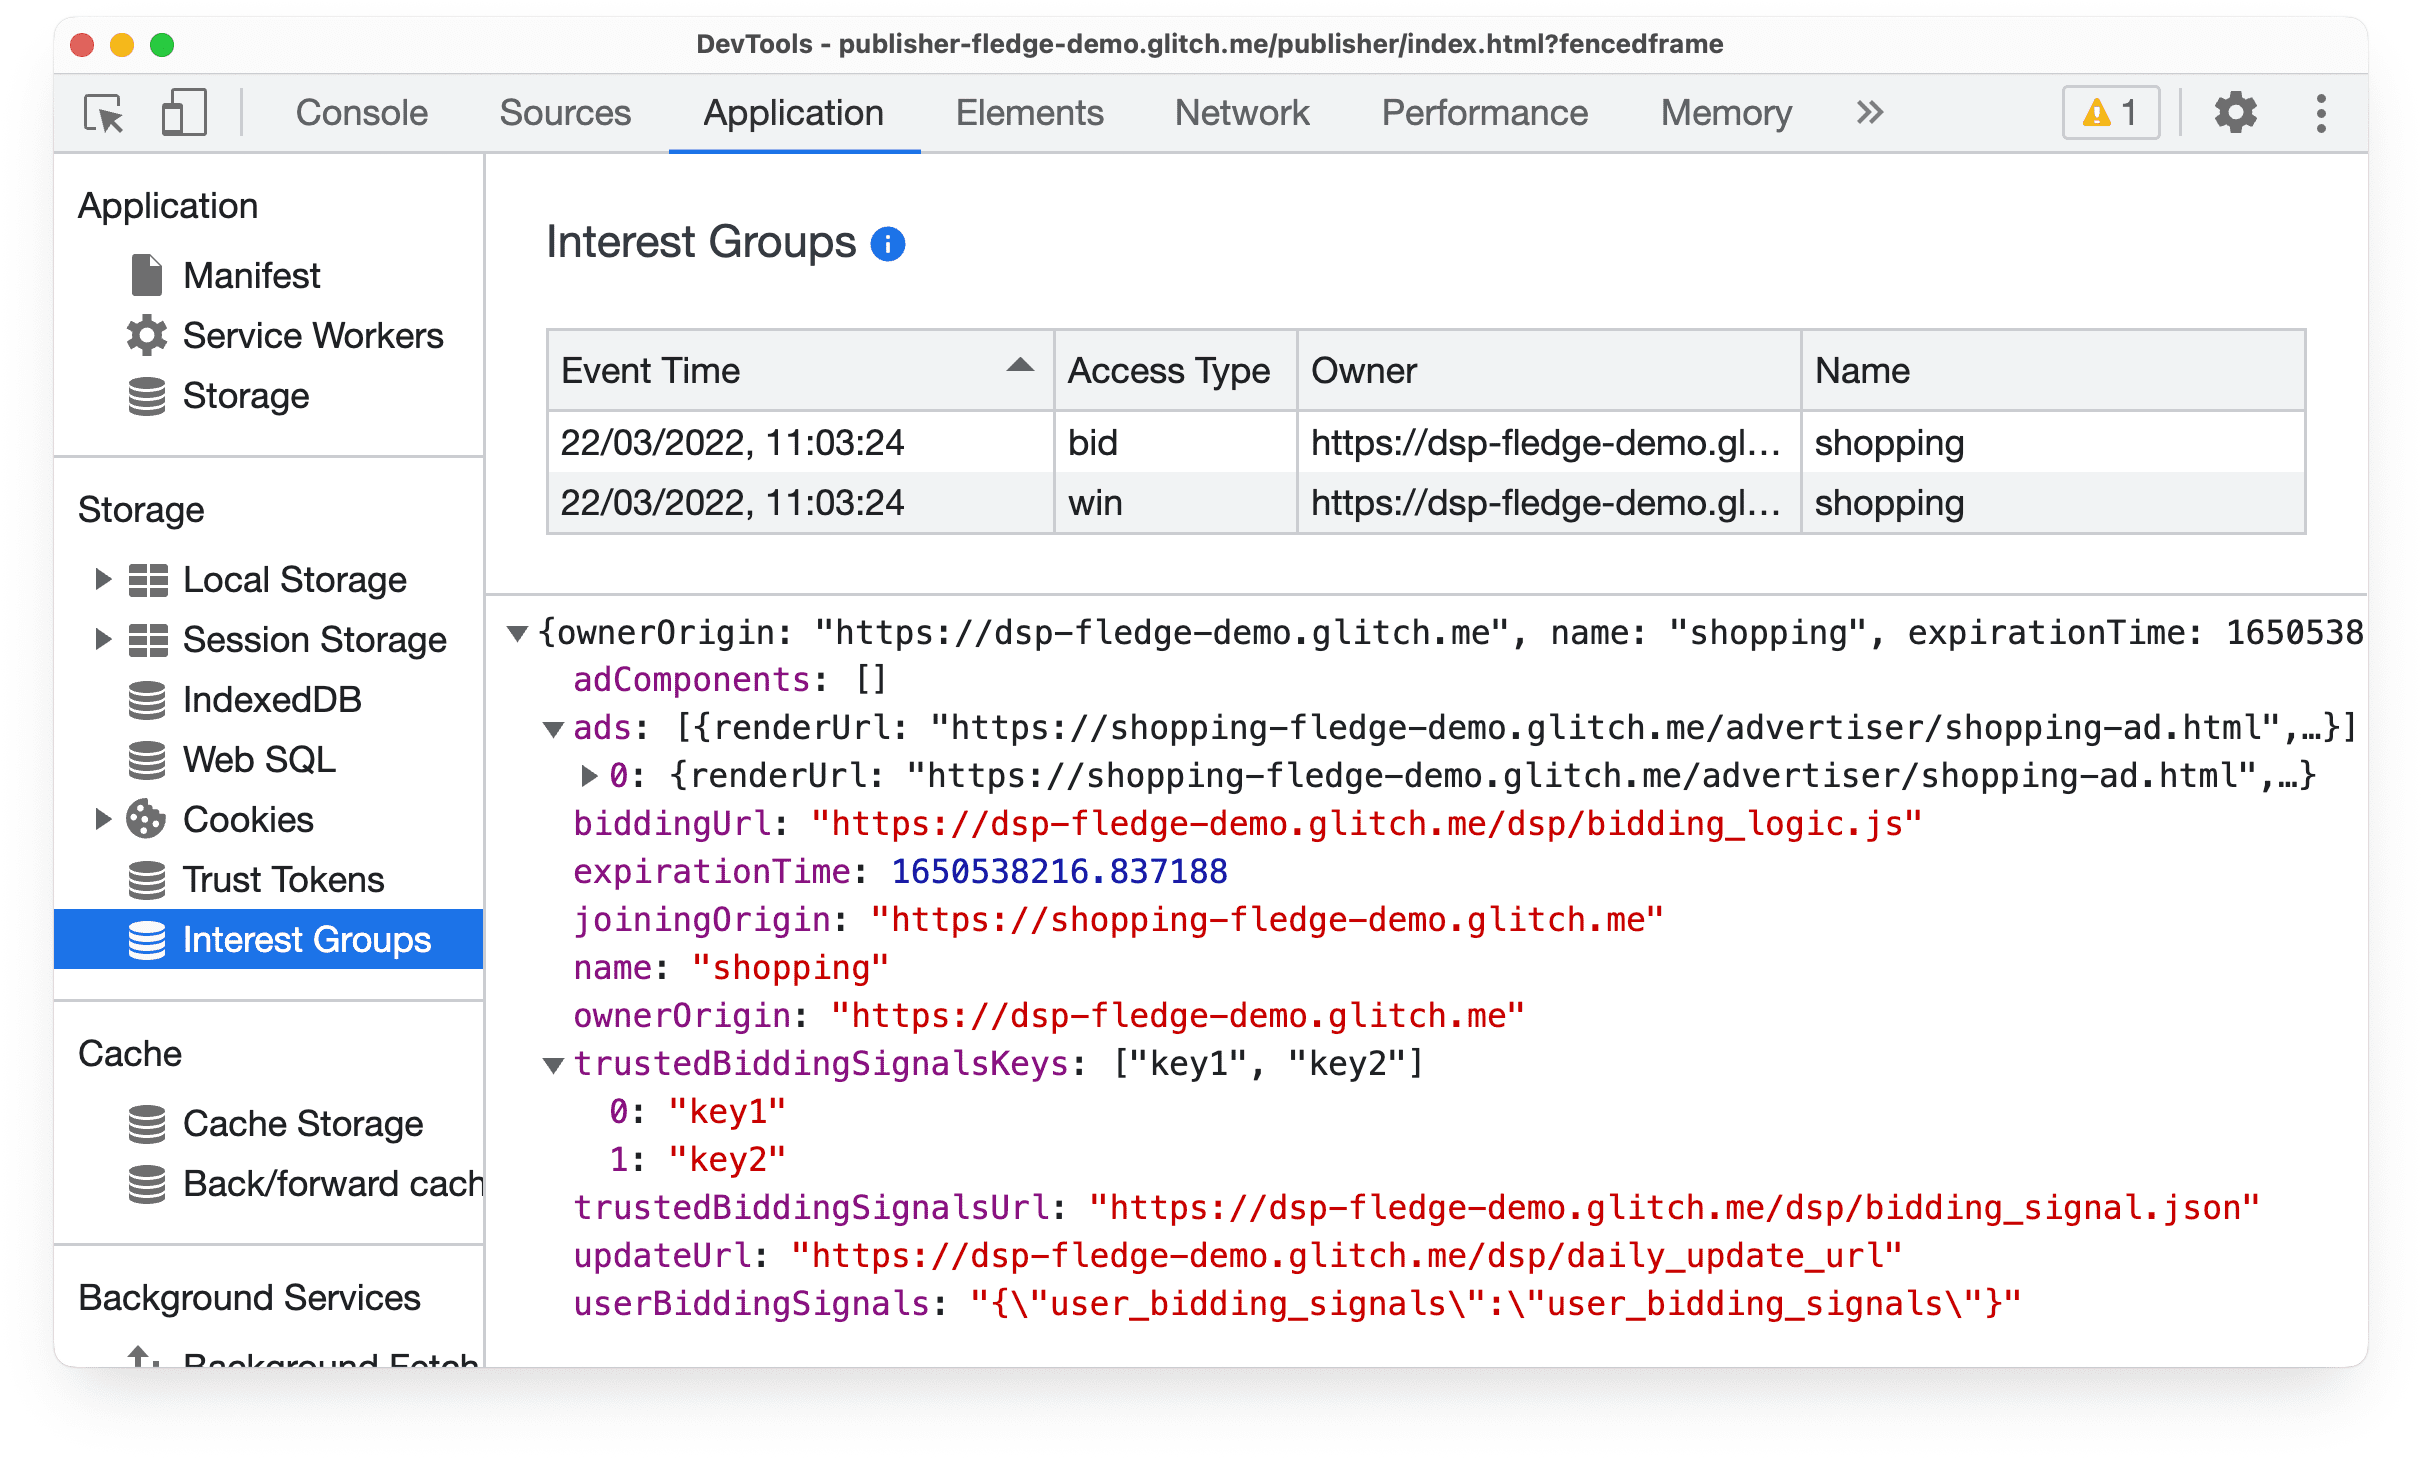 پانل برنامه DevTools در Chrome Canary، اطلاعاتی را در مورد پیشنهاد حراج مخاطب محافظت شده و رویدادهای برنده نشان می دهد.